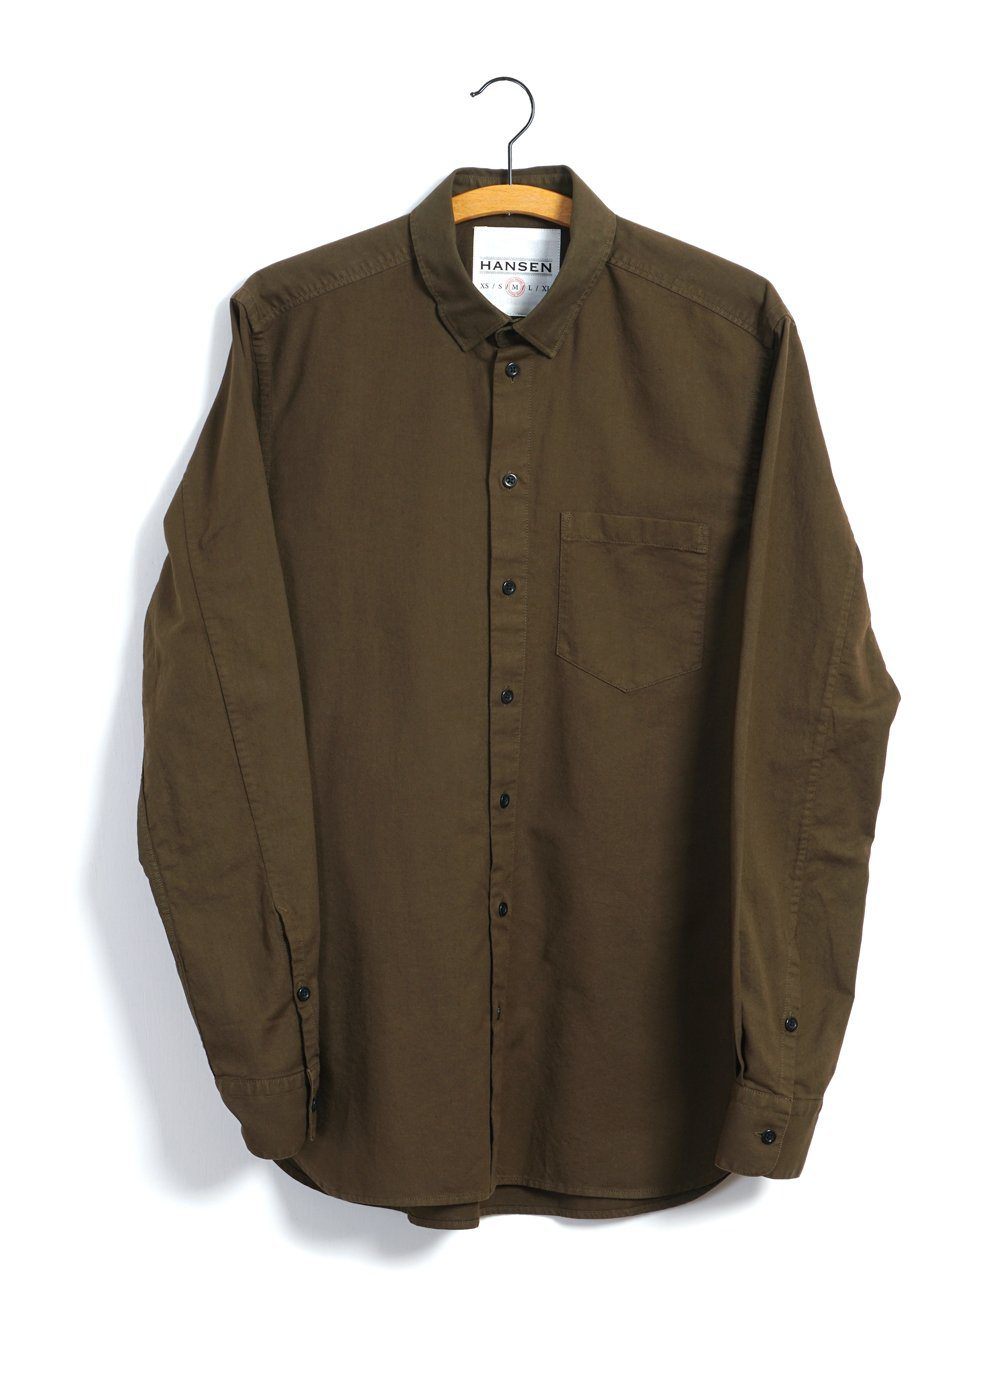 HANSEN Garments - HAAKON | Hidden Button Down Shirt | Plant - HANSEN Garments